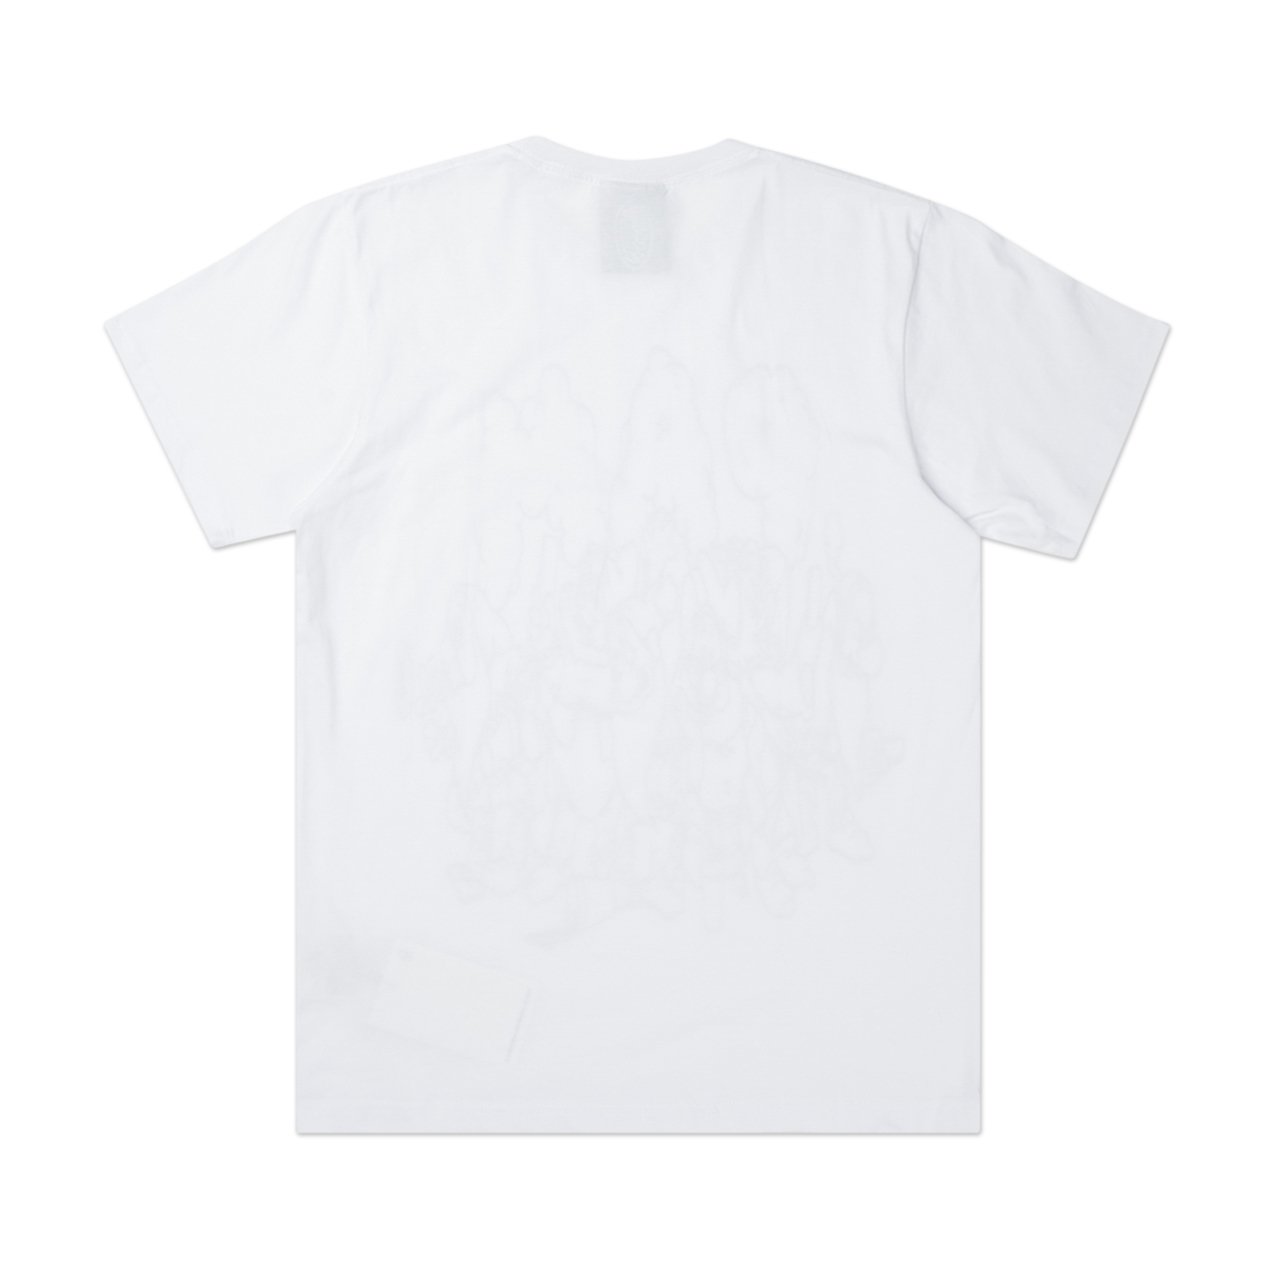 perks and mini perks and mini screen time s/s t-shirt (white)